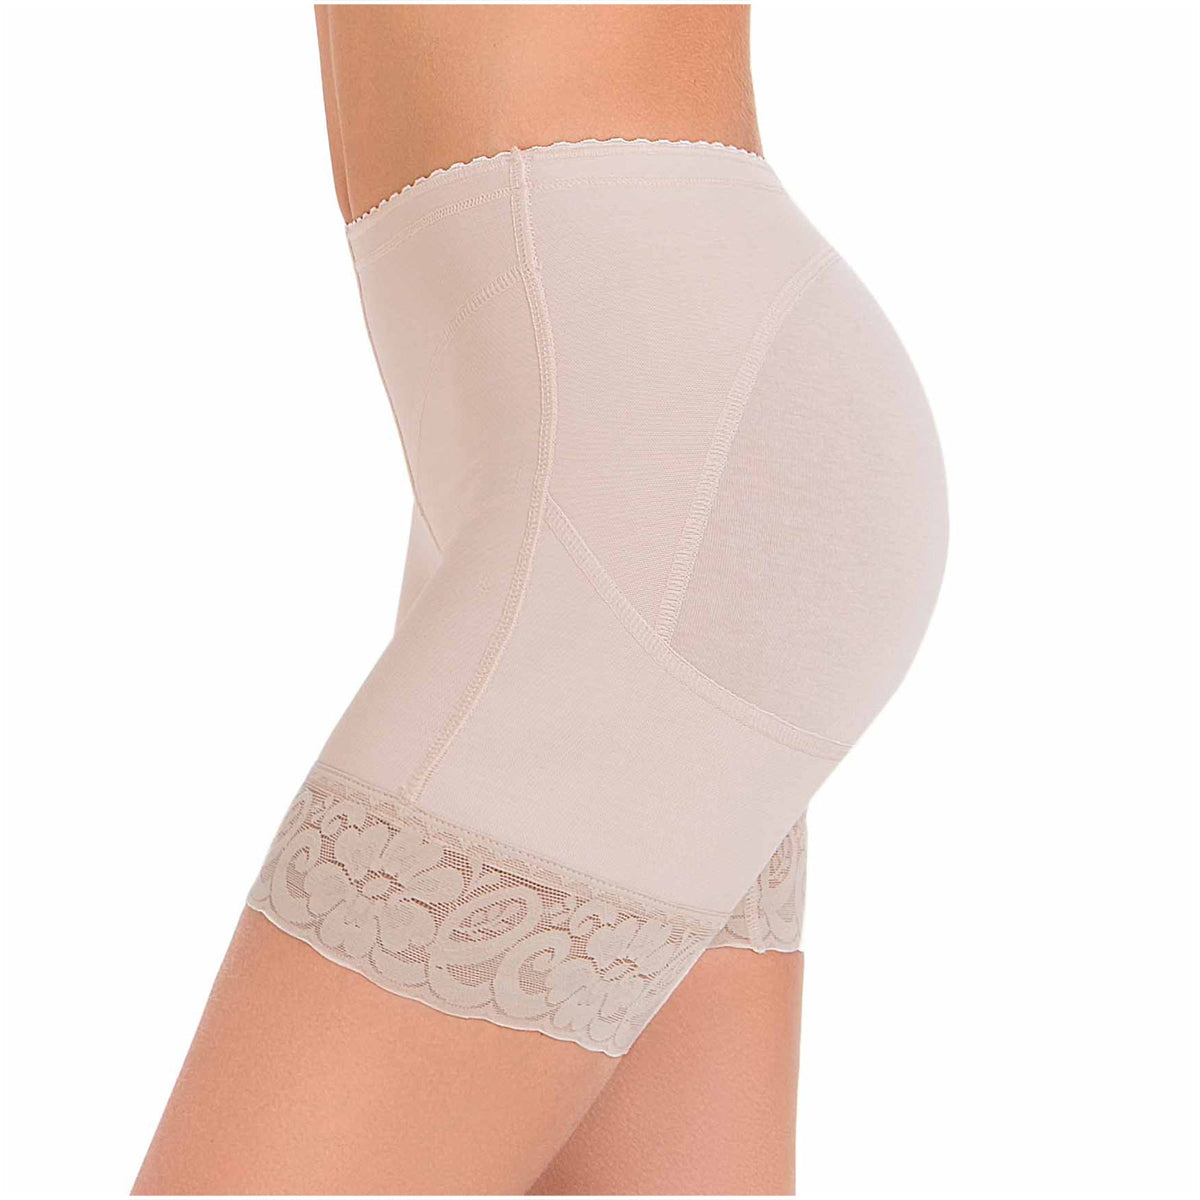 Fajas MariaE 9279 | Pantalones cortos moldeadores de glúteos para mujer